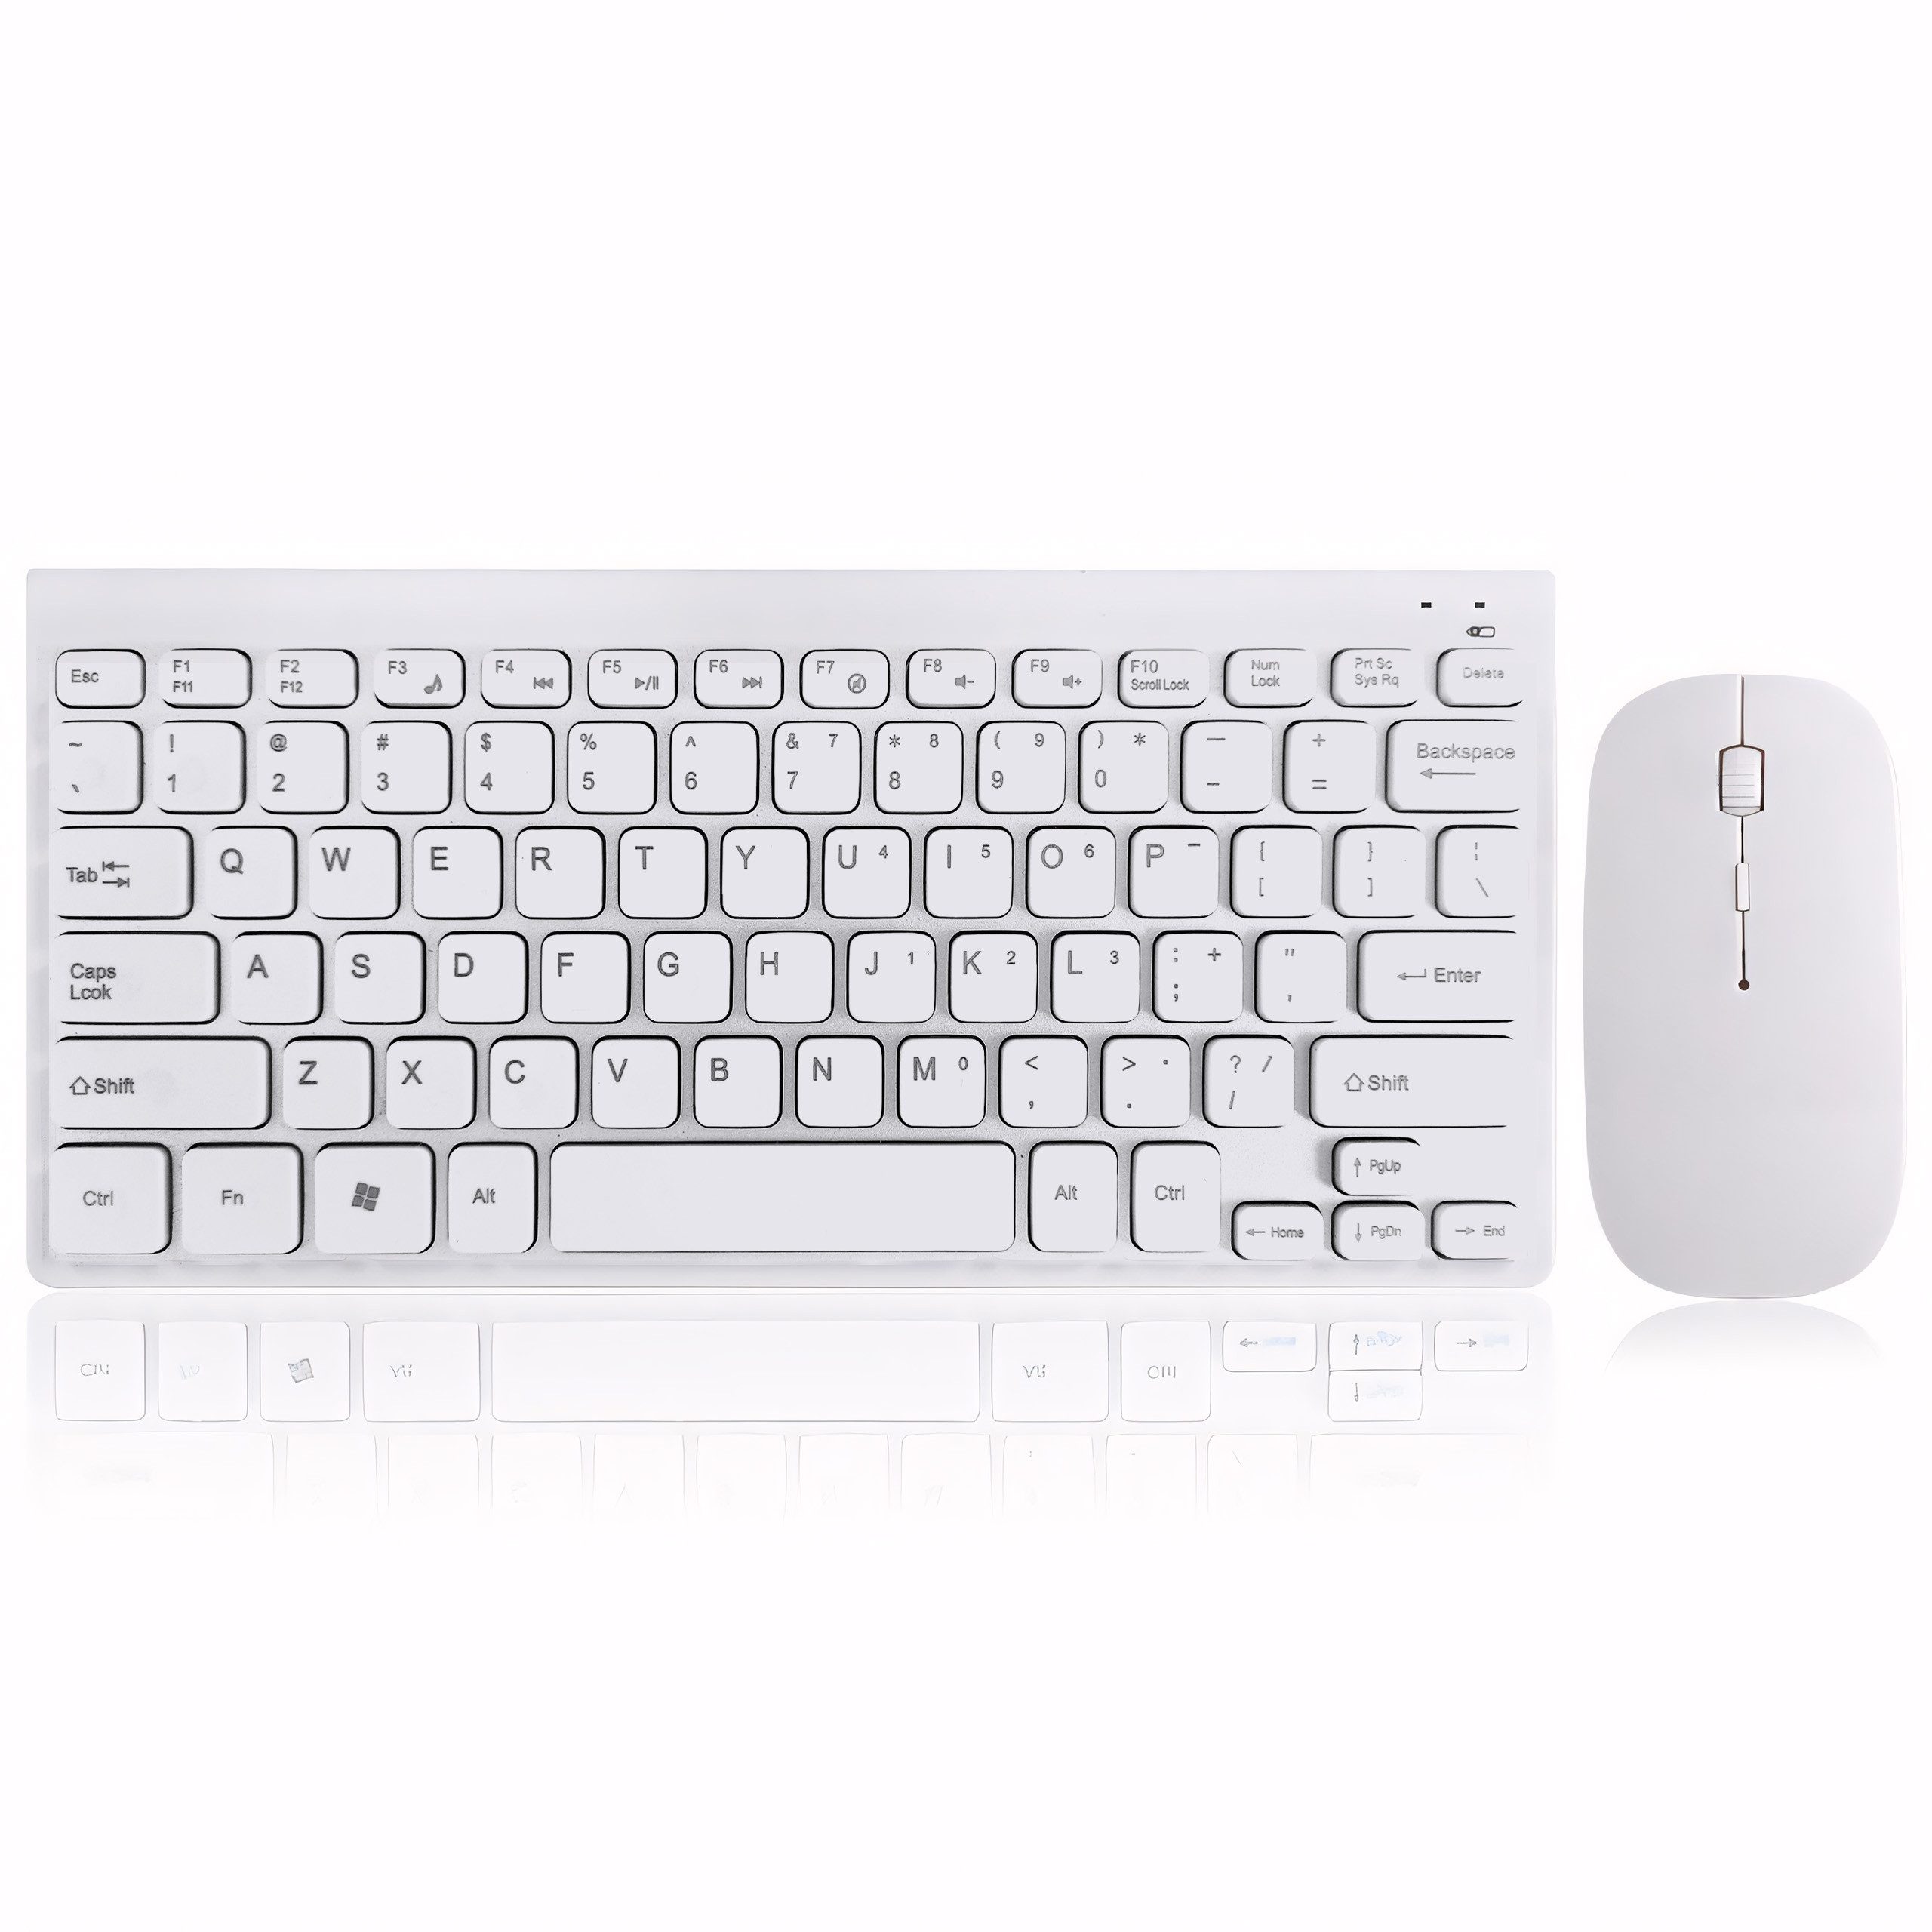 Retoo Maus Keyboard Wireless QWERTY Tastatur Set 2,4GHz PC Funkmaus Weiß Tastatur- und Maus-Set, (Kabelloses Tastatur- und Maus-Set, Kompakte Funktastatur und Mouse), Mobilität, Tippkomfort, Lange Batterielebensdauer, Multimedia-Tasten